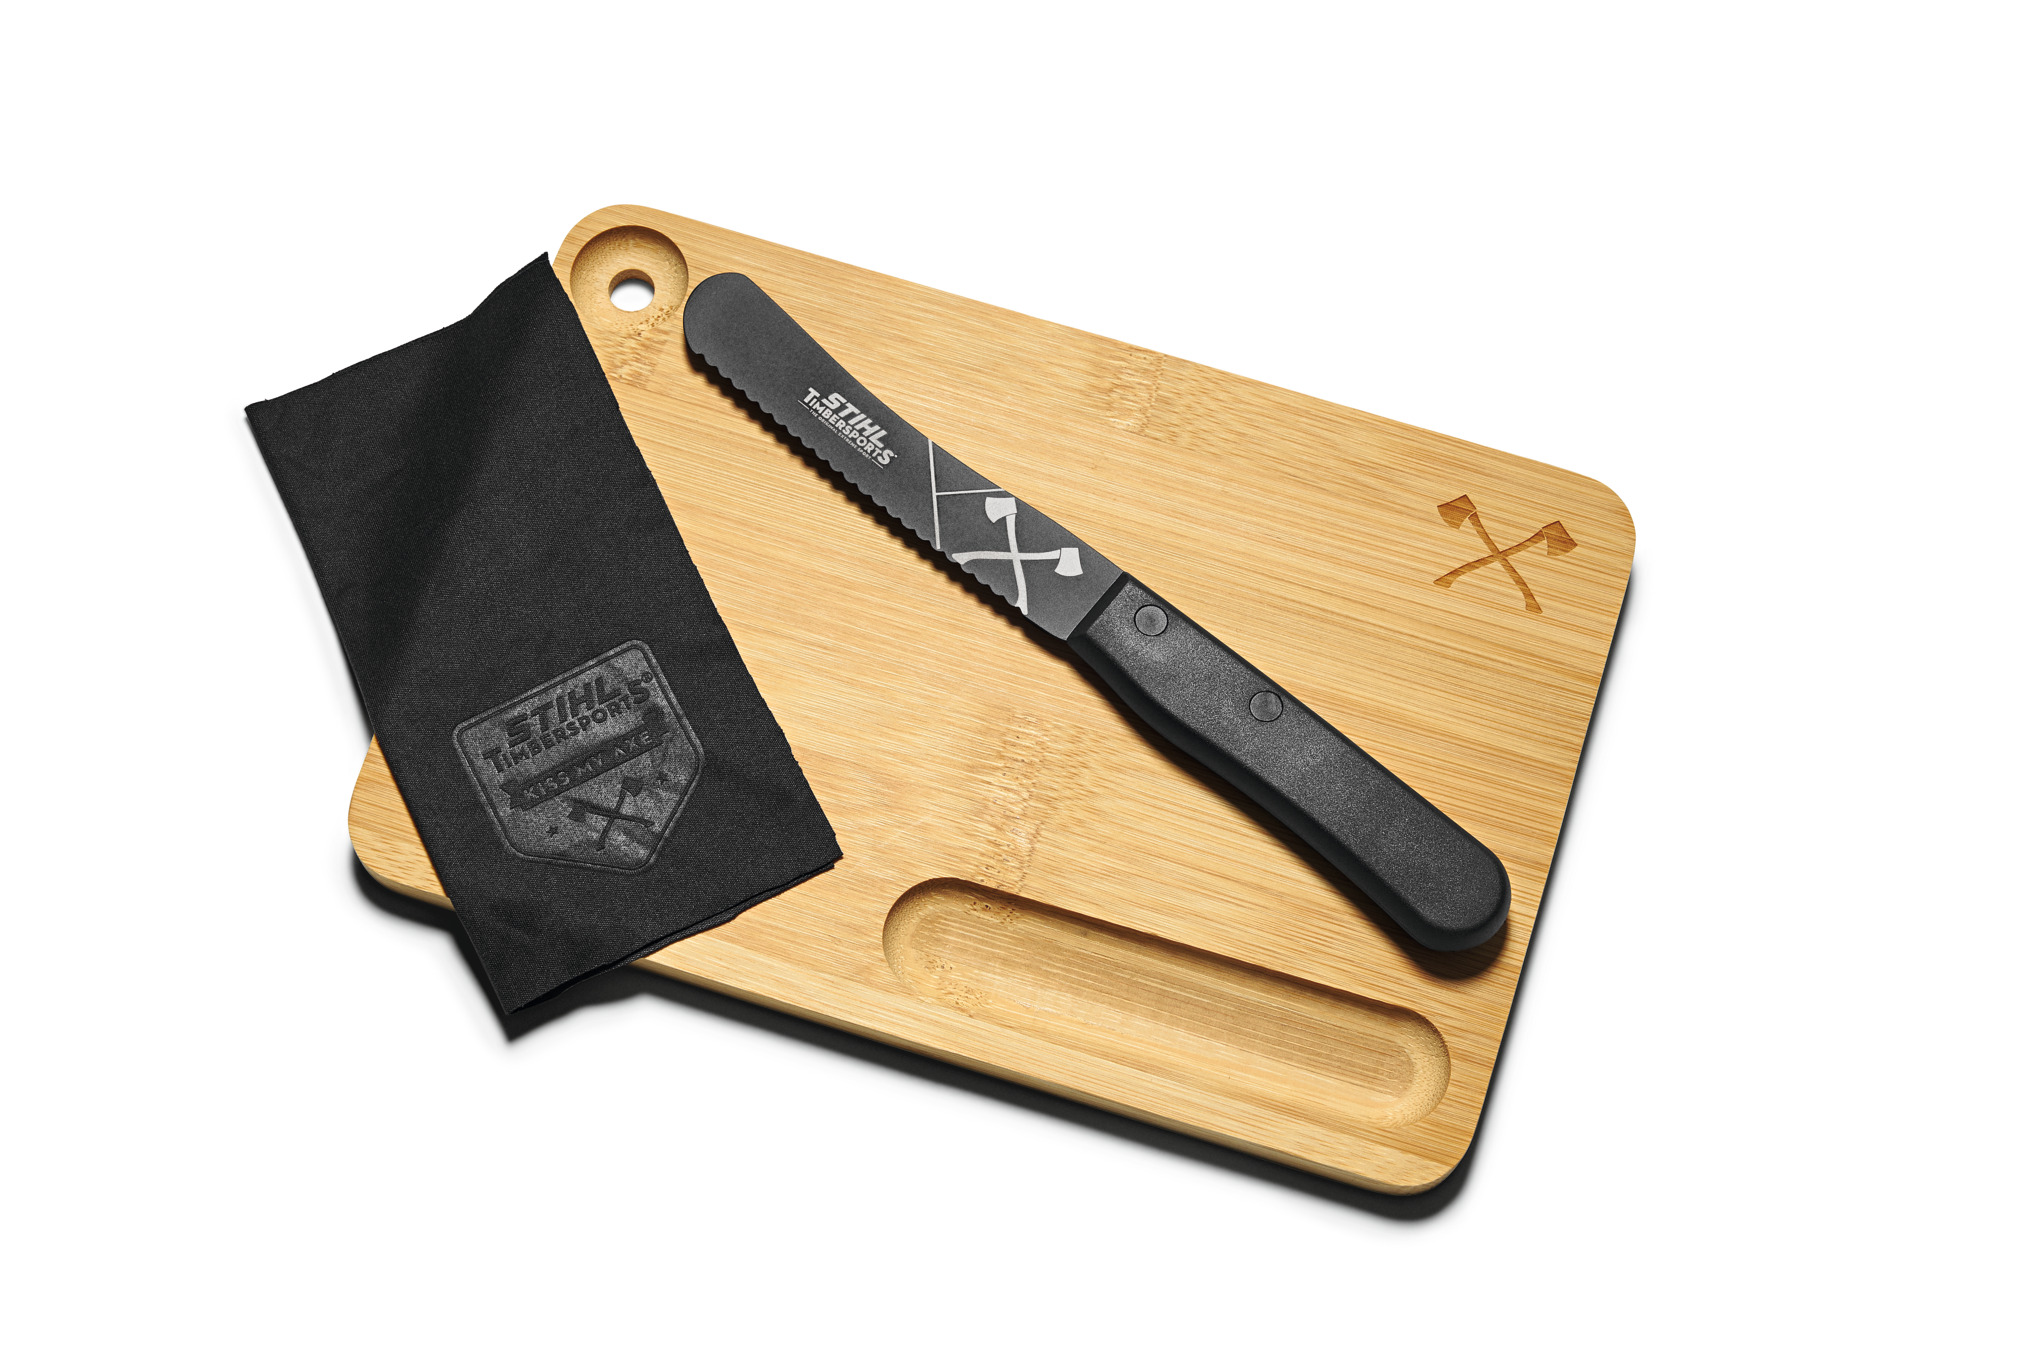 Tabla de cortar con cuchillo. 2en1 Timbersports Edition